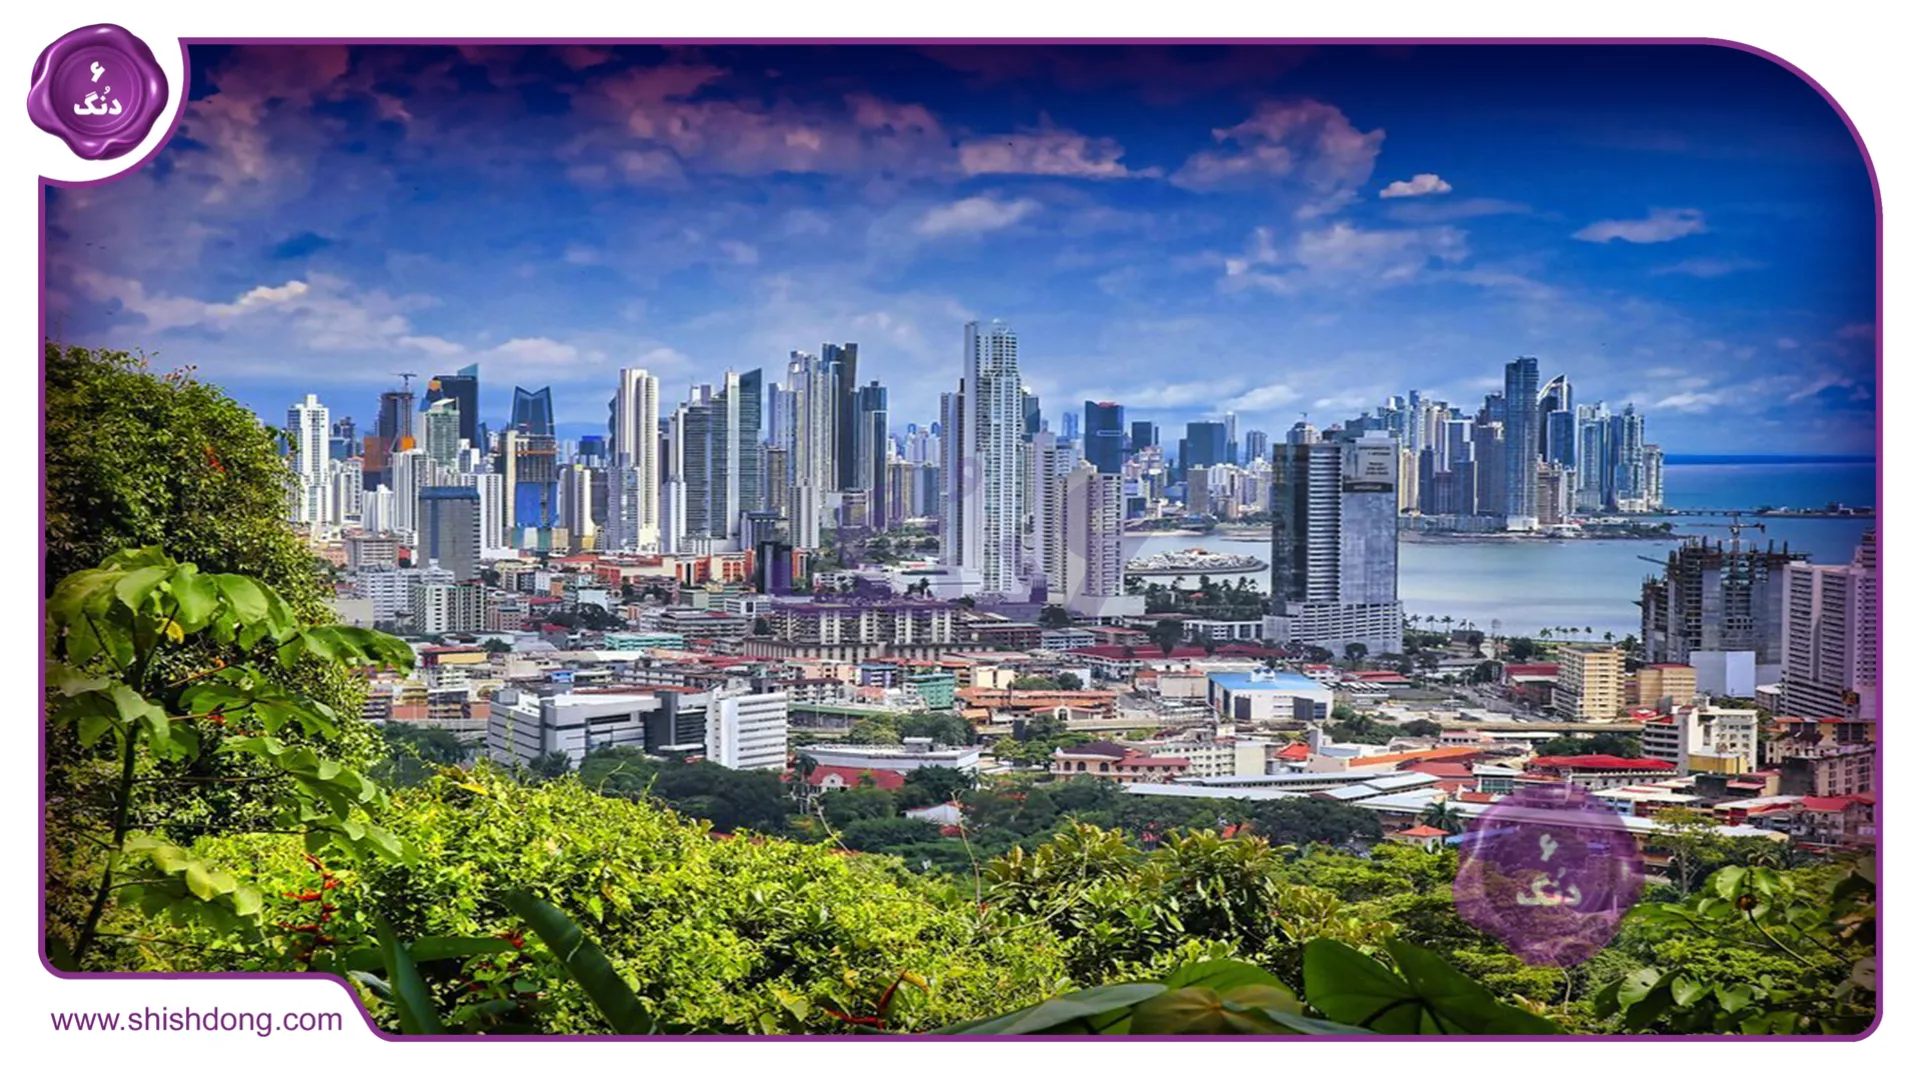 سرسبزی و زیبایی پاناما سیتی